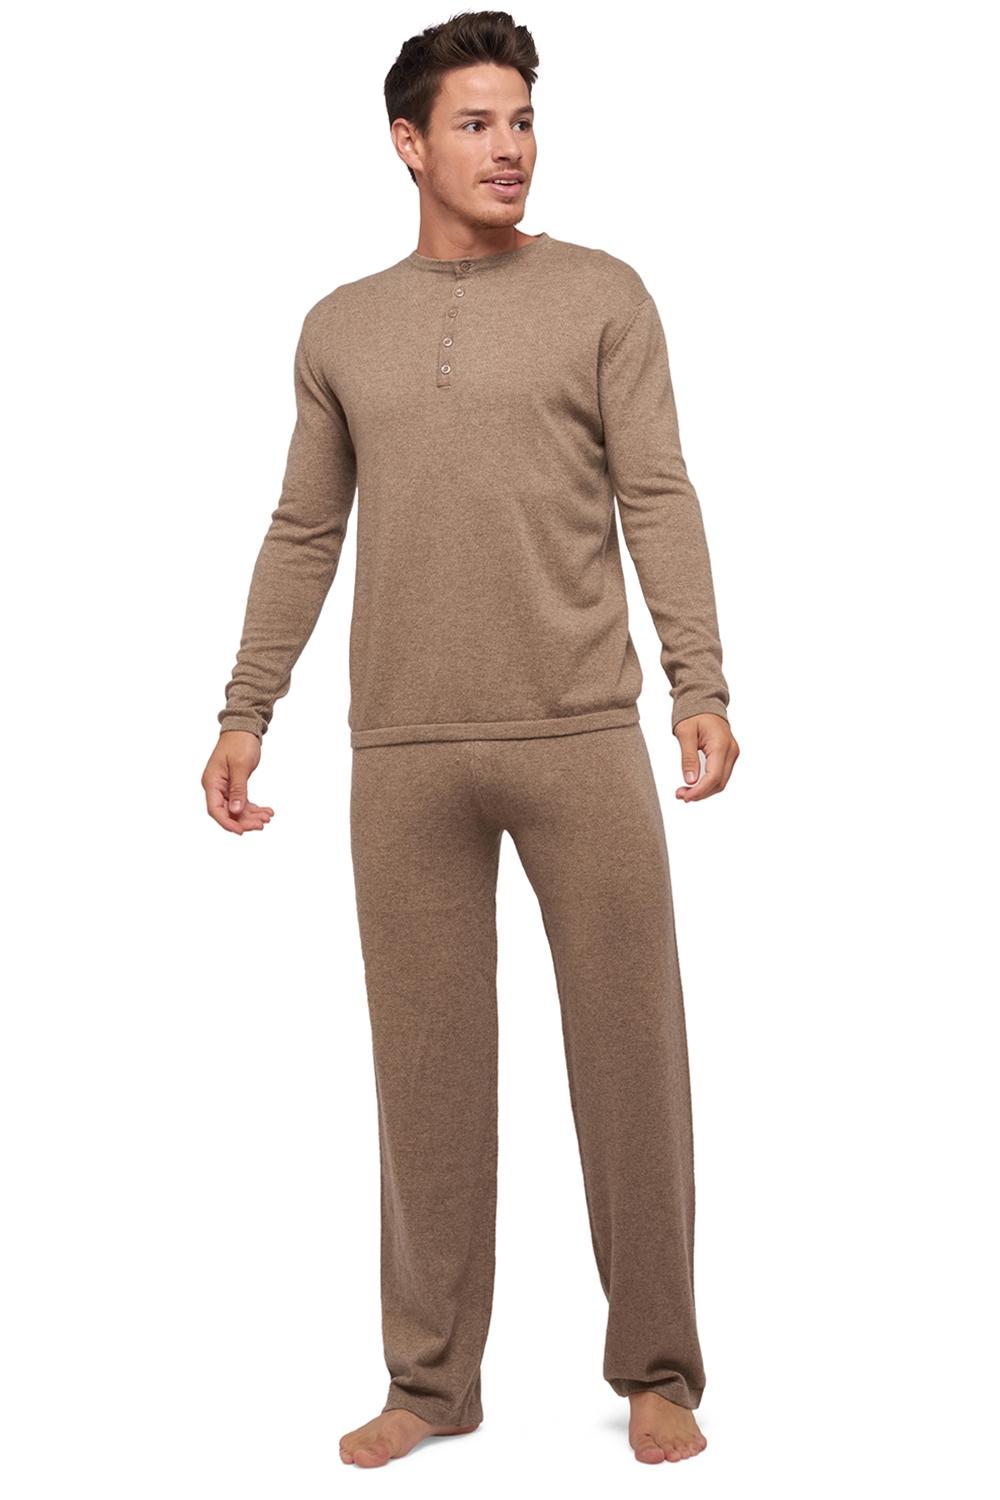 Cachemire pyjama homme adam natural brown 4xl